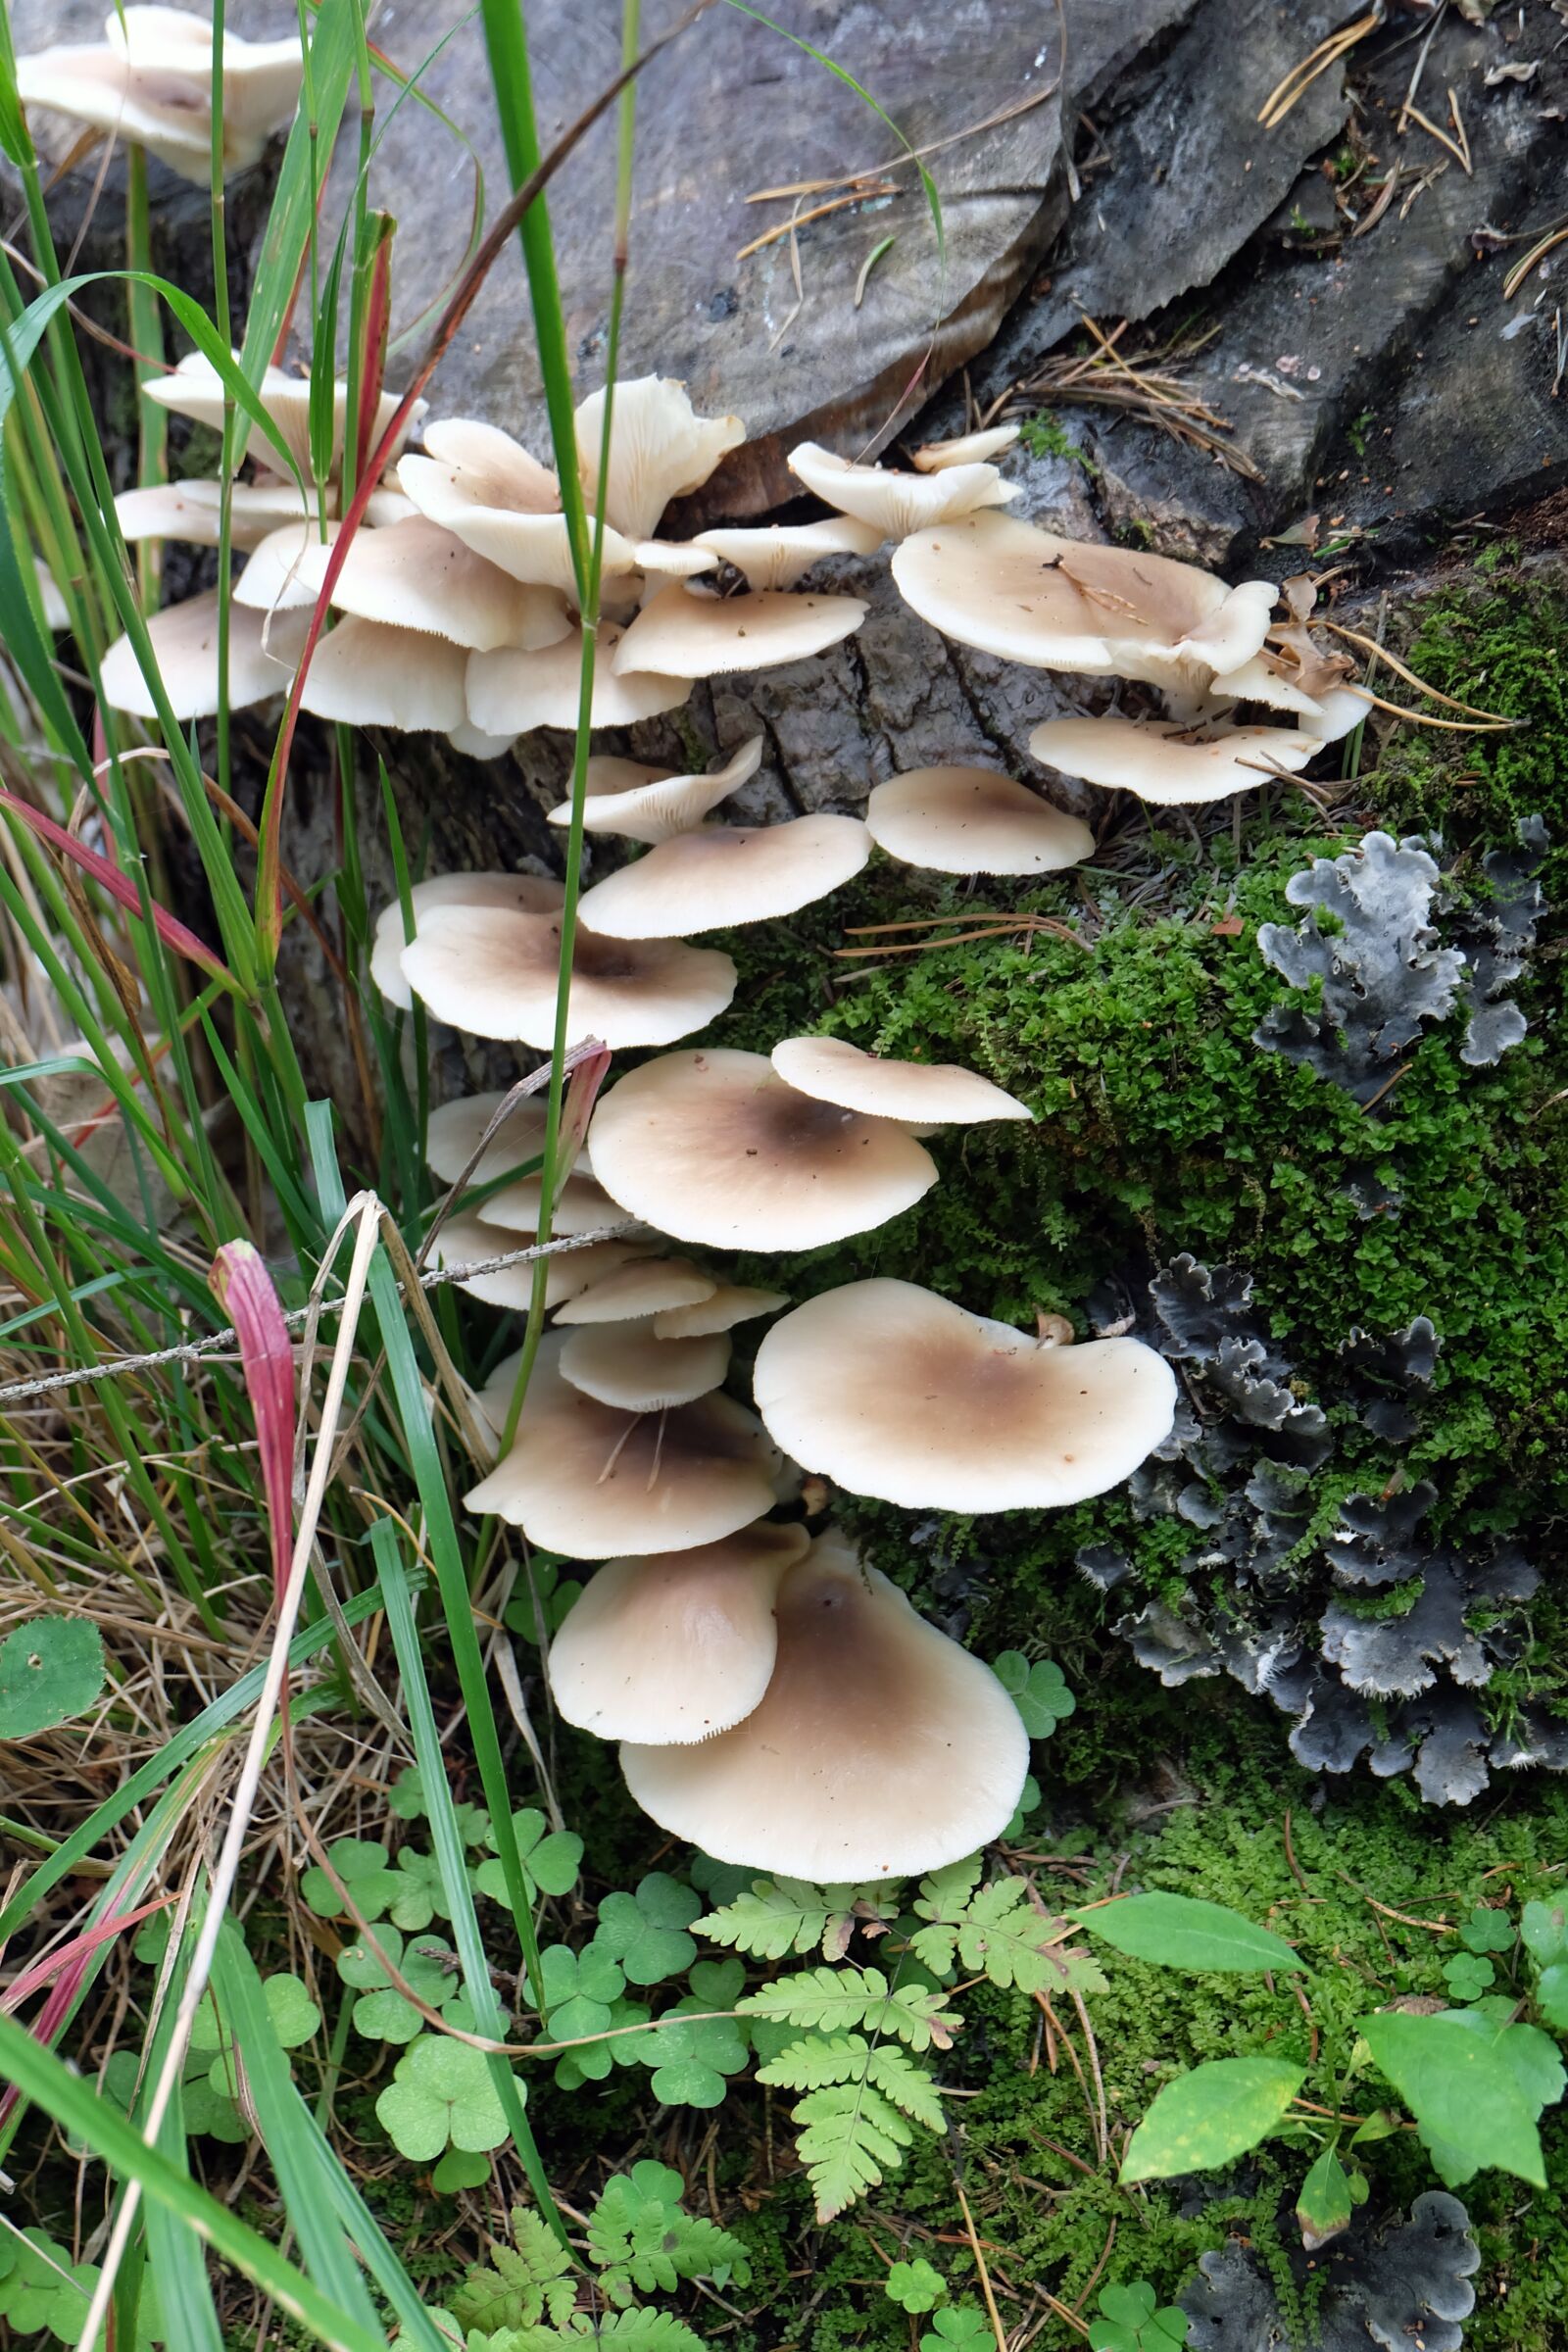 Fujifilm X-A2 sample photo. Mushrooms, nature, autumn photography